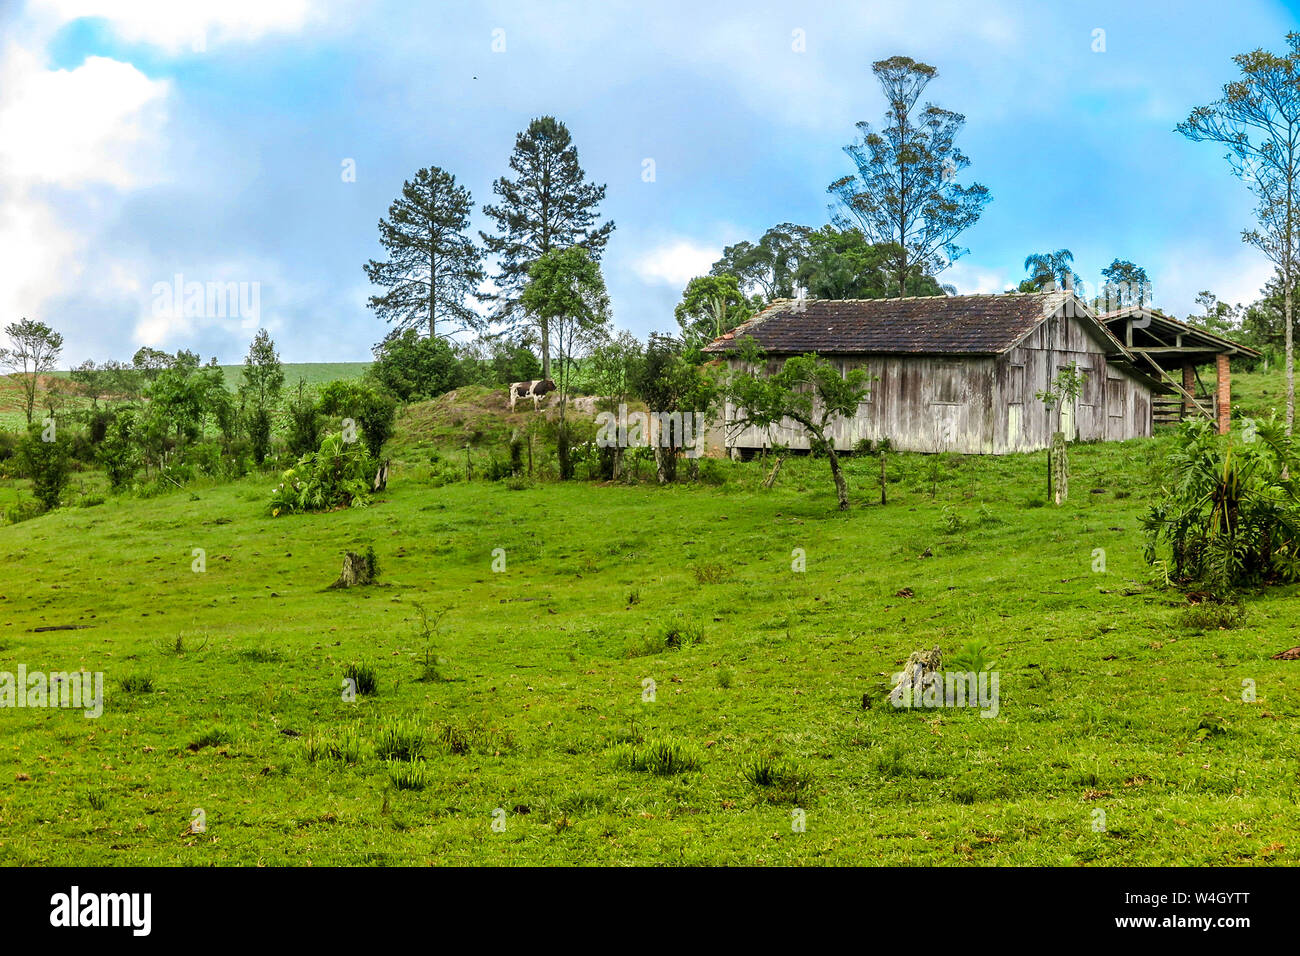 Ancienne ferme en bois avec de l'herbe, vache repéré, ciel bleu avec des nuages, Petrolandia, Santa Catarina Banque D'Images